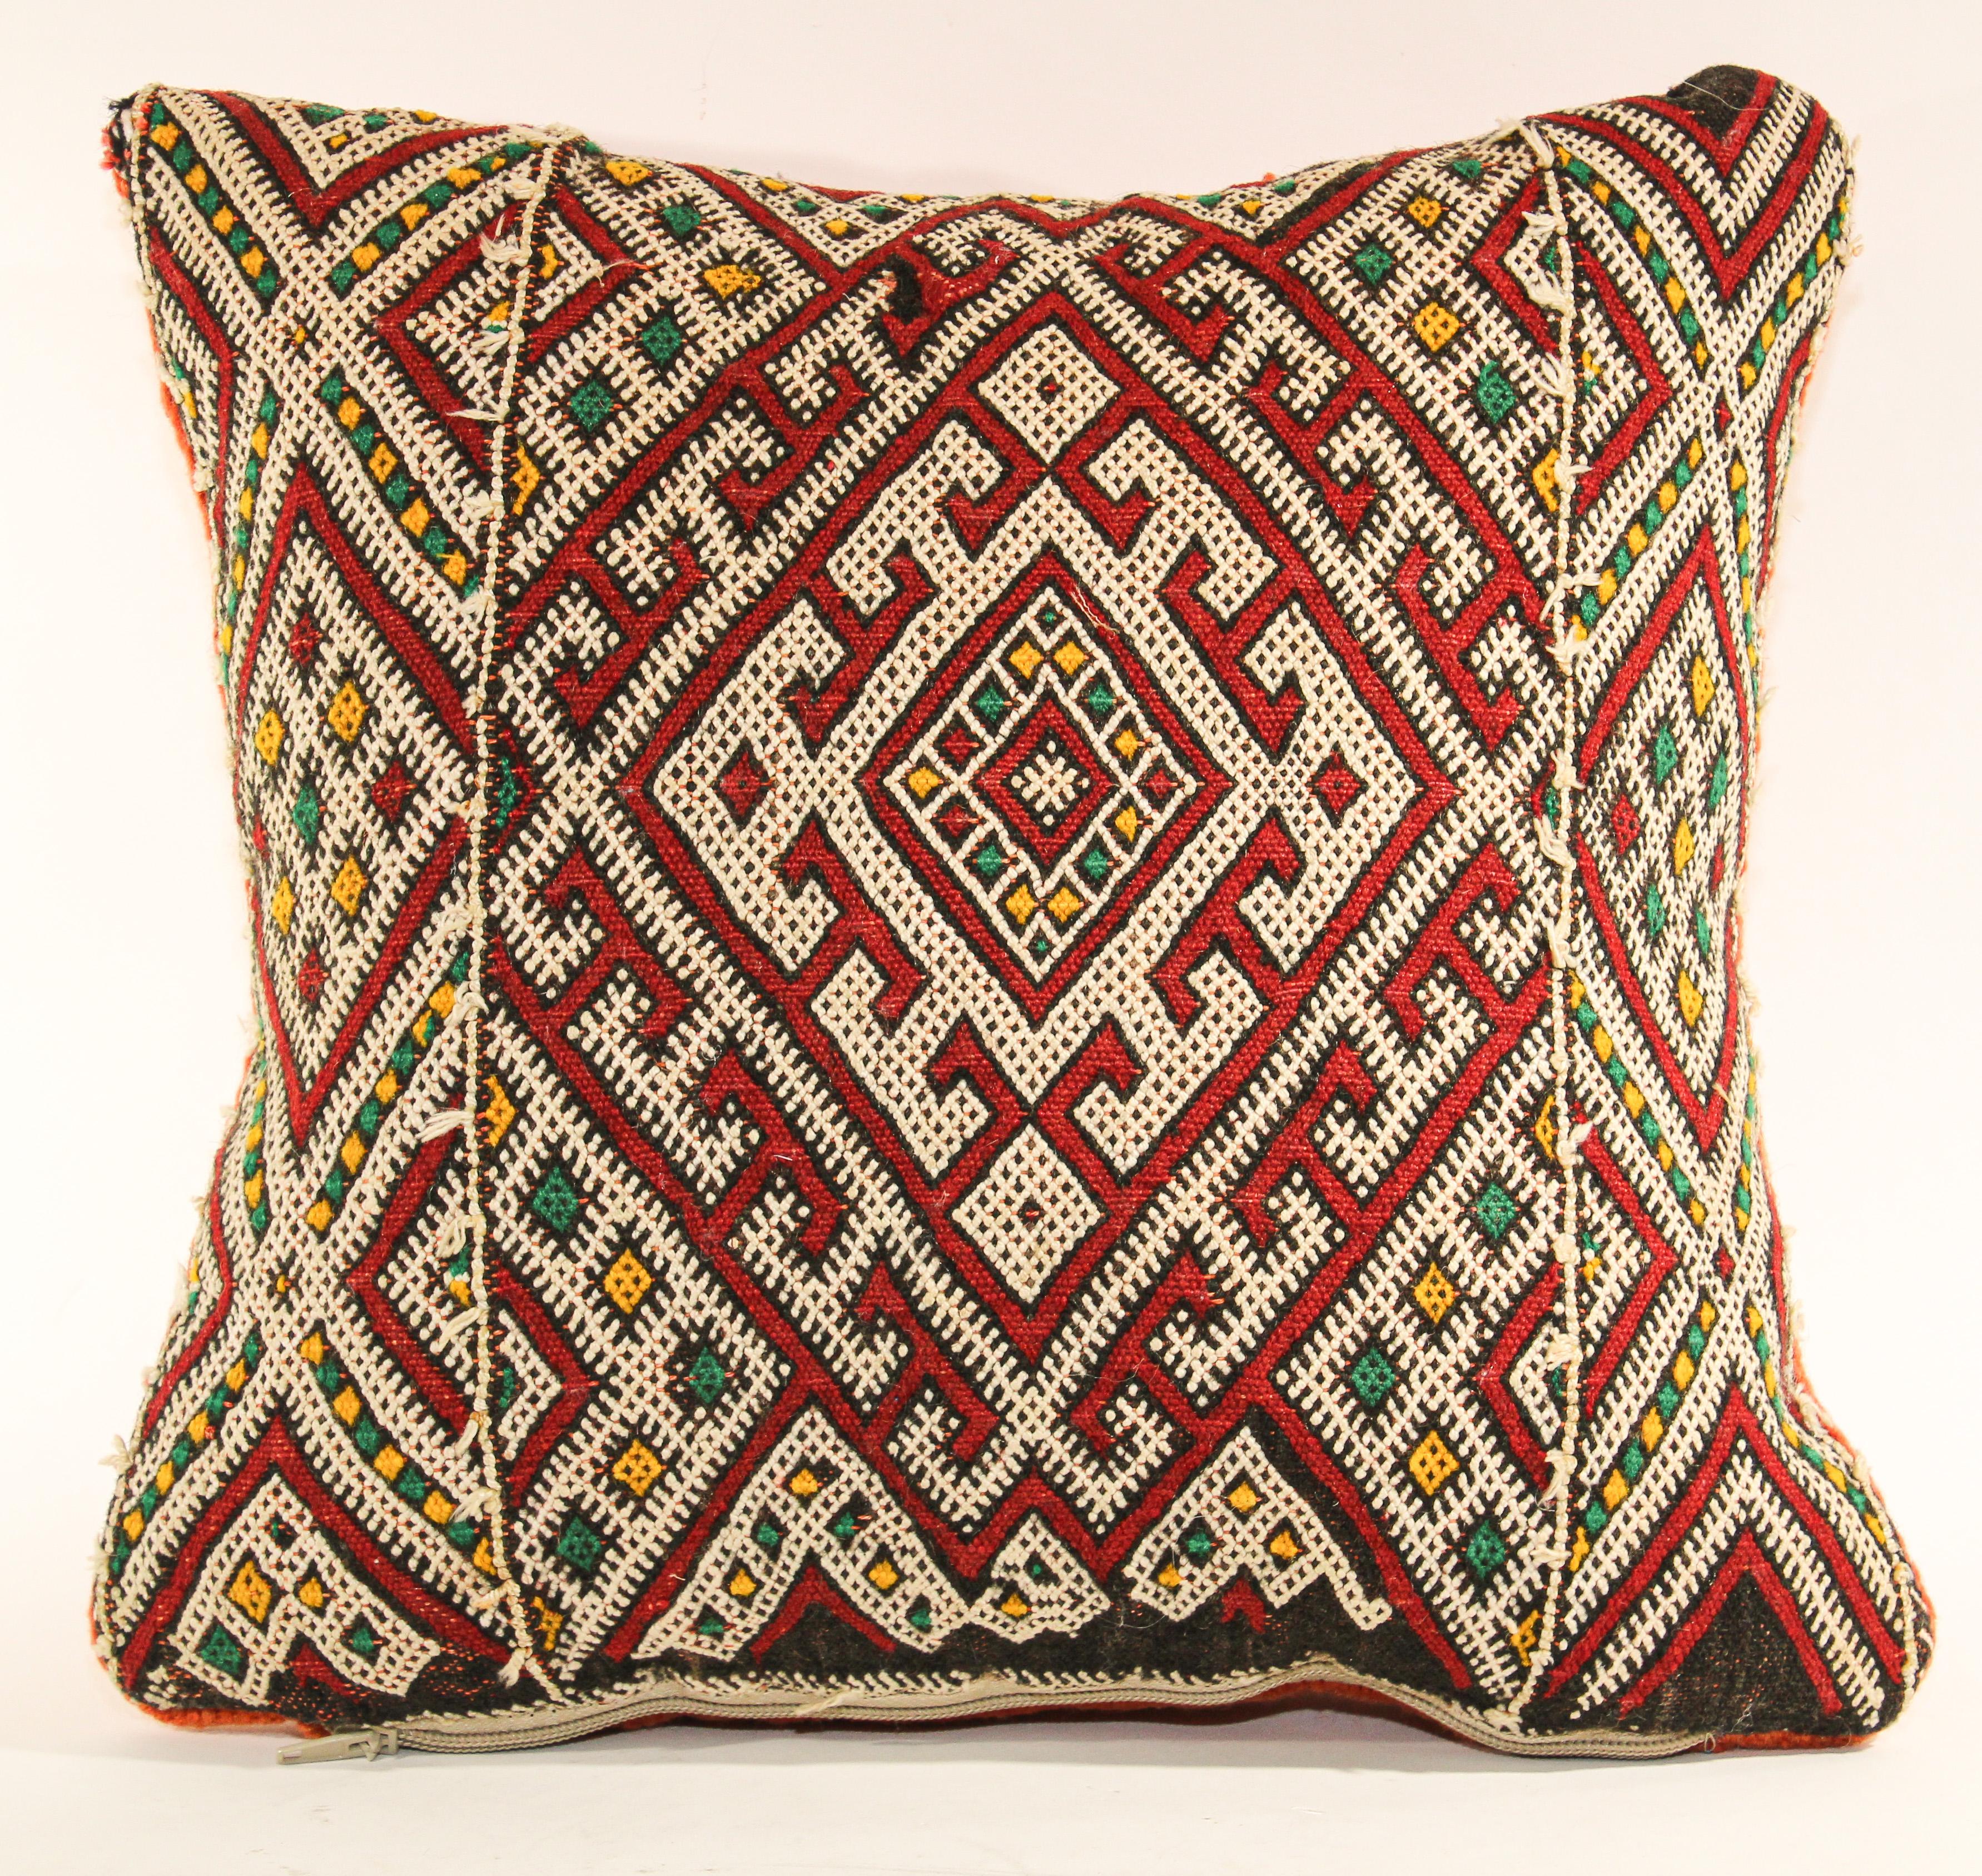 Coussin ethnique berbère marocain tribal tissé à la main fabriqué à partir d'un tapis vintage.
Le recto et le verso sont fabriqués à partir d'un tapis différent, le recto étant plus élaboré et le verso plus simple.
Motifs géométriques tribaux